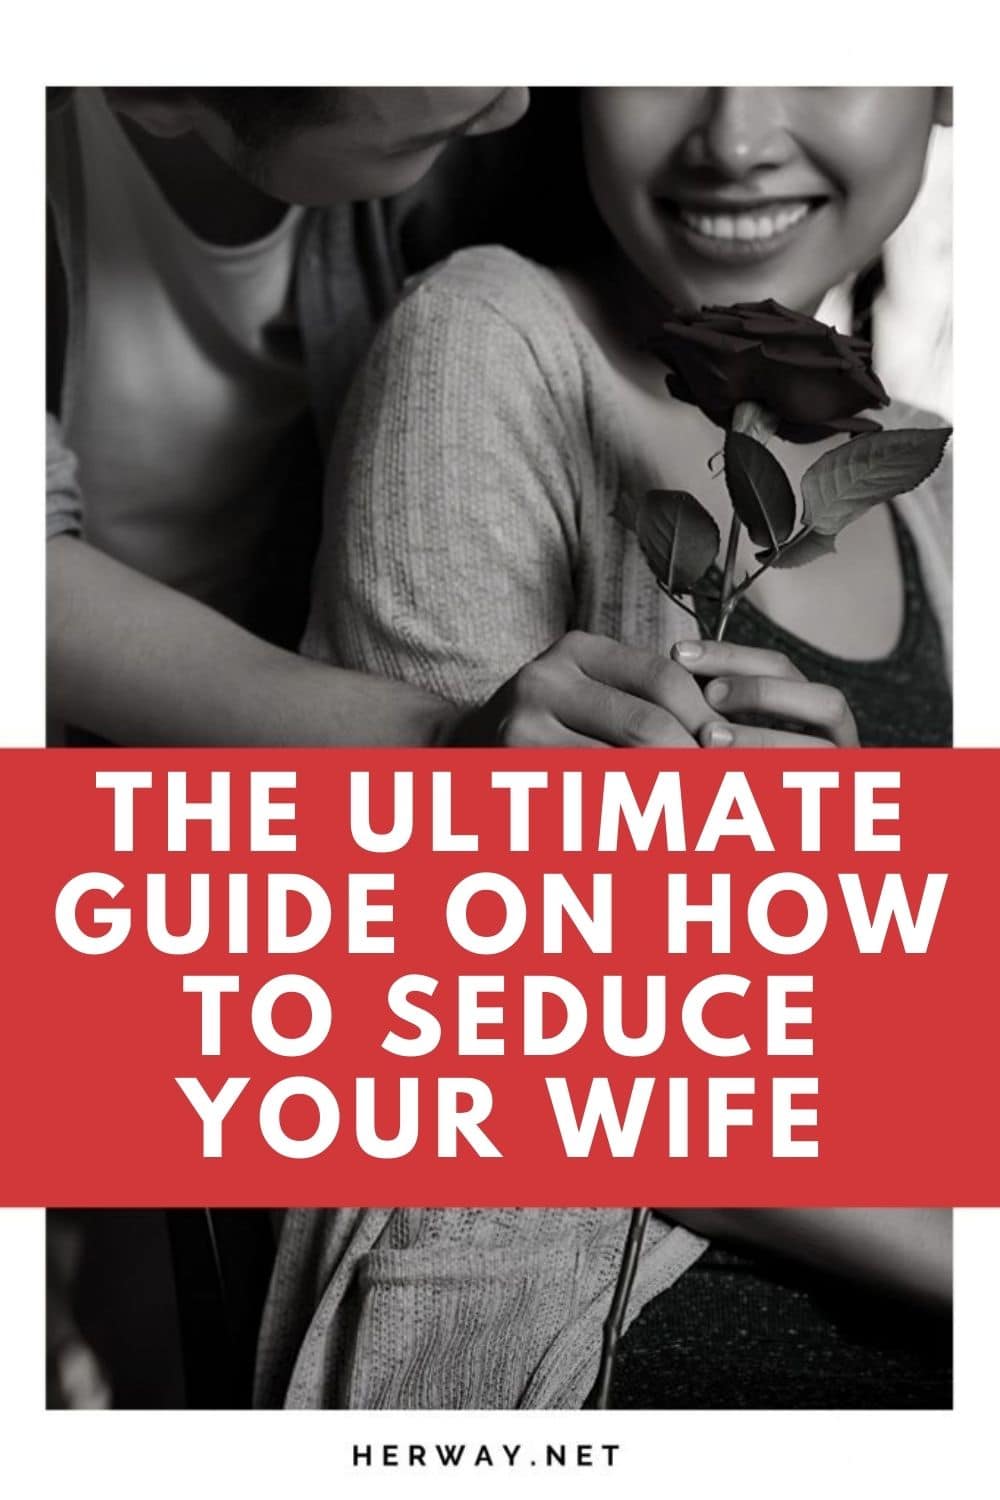 La guía definitiva para seducir a tu mujer